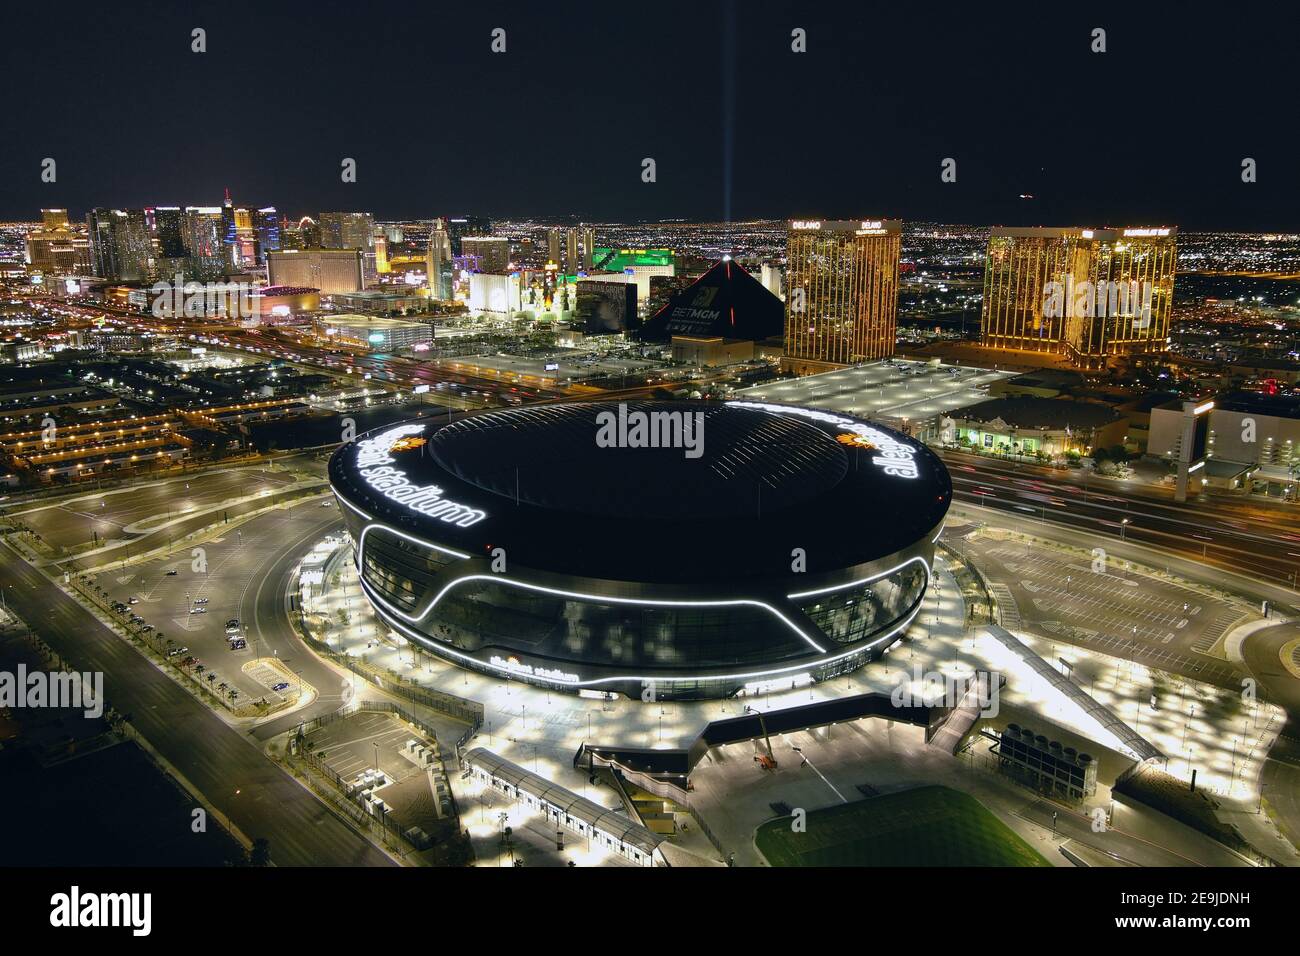 Una vista aerea dello stadio Allegiant, mercoledì 3 febbraio 2021, a Las Vegas. Lo stadio è la sede dei Las Vegas Raiders e dei ribelli dell'UNLV. Foto Stock